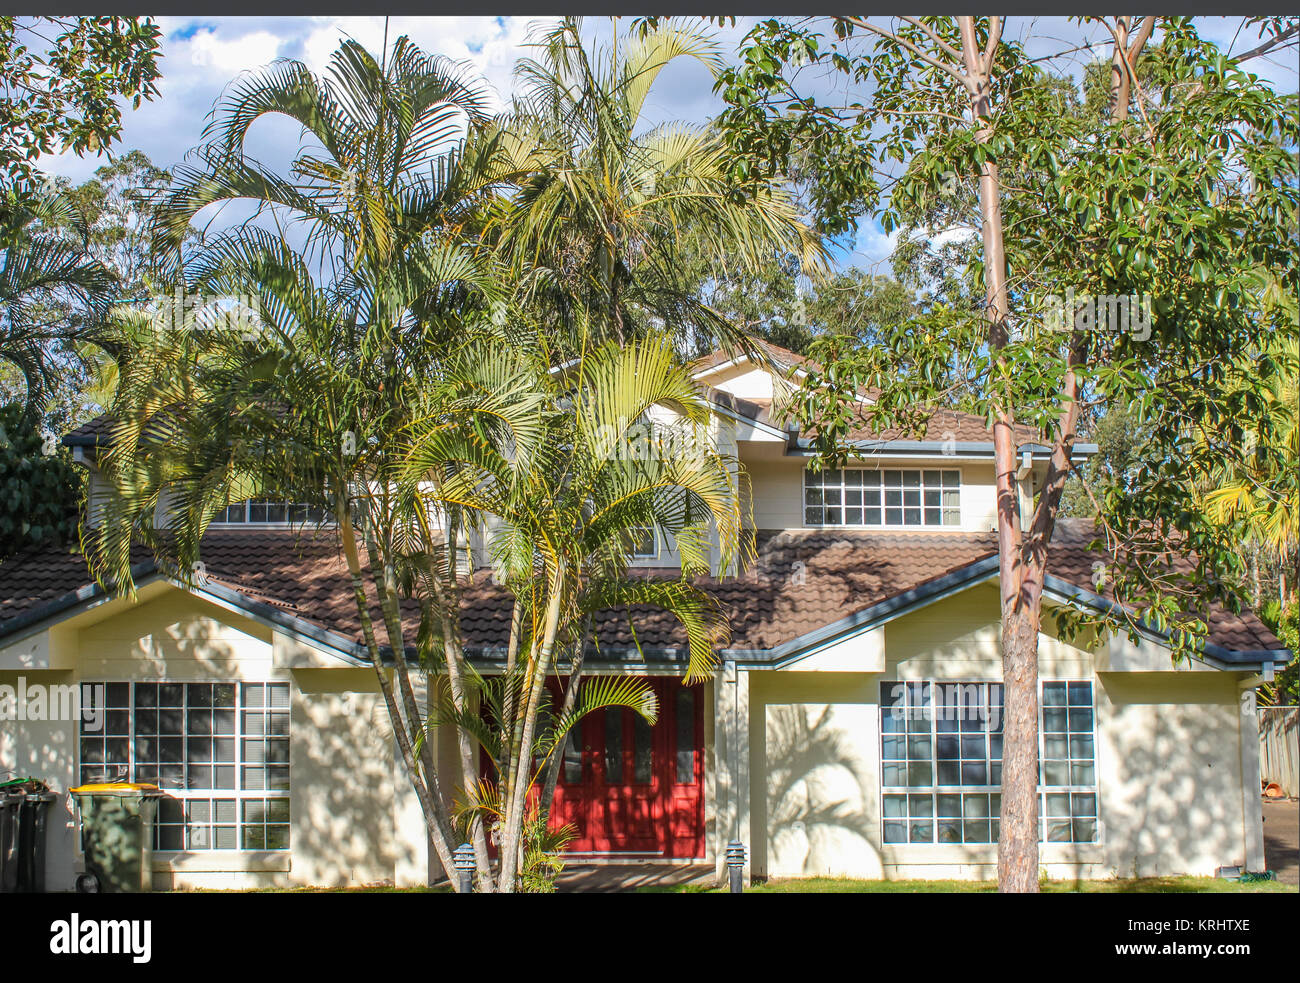 Typische Suburban House außerhalb Brisbane Australien mit Gummi Bäume und Palmen an einem schönen Sommertag Stockfoto